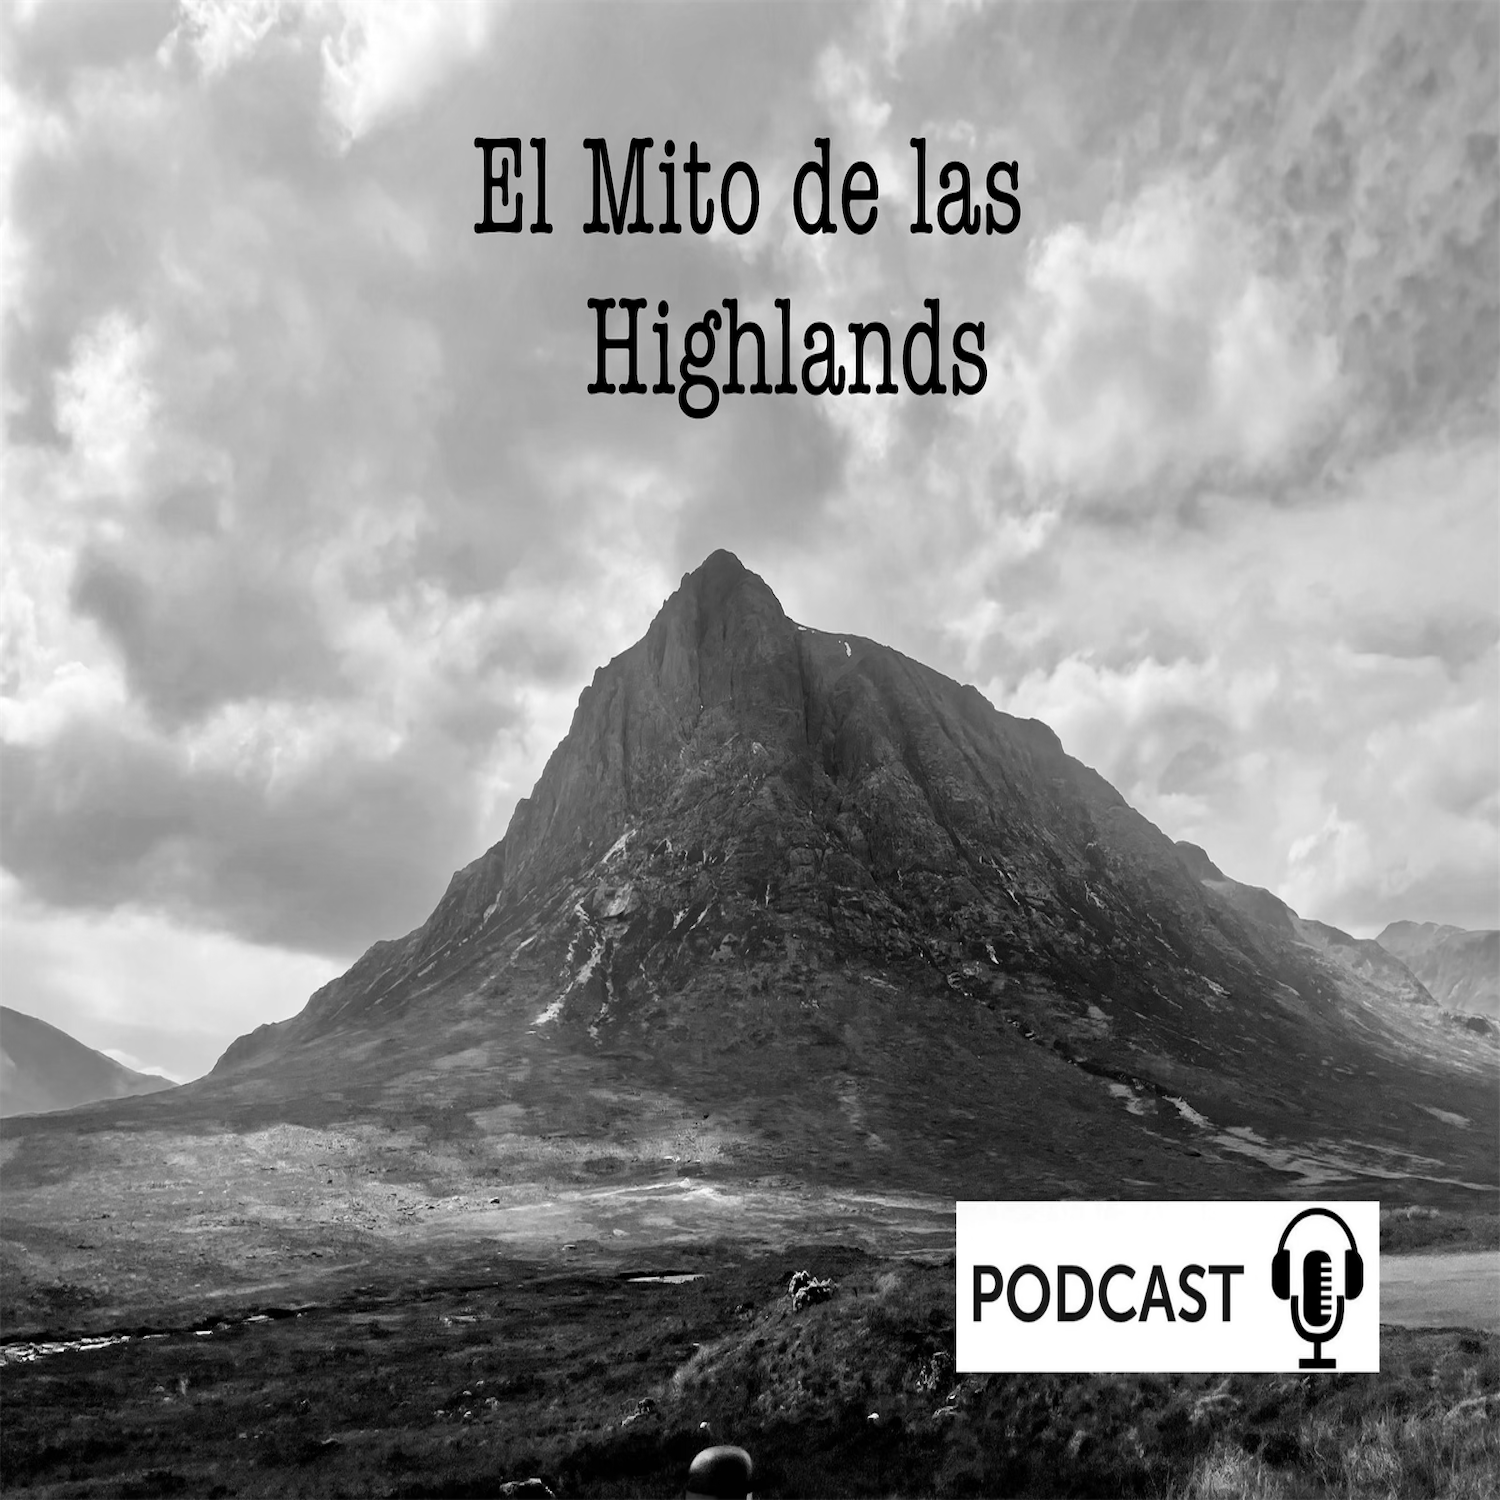 El Mito de las Highlands